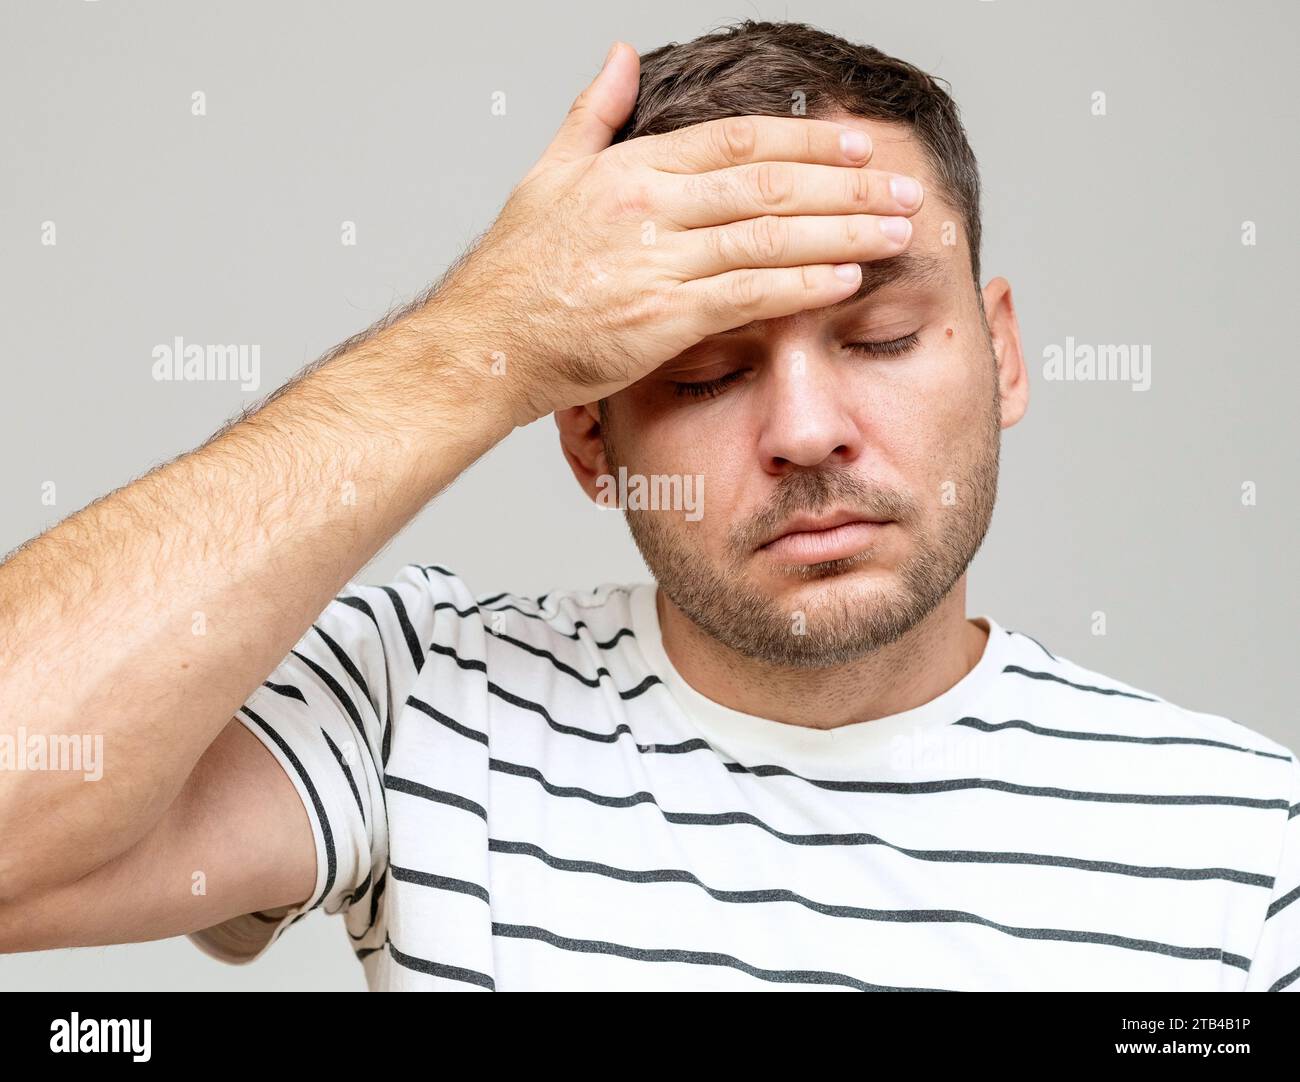 Porträt eines Mannes, der sich unwohl fühlt. Kopfschmerzen und Fieber. Der Mann berührt seine Stirn mit der Hand. Stockfoto